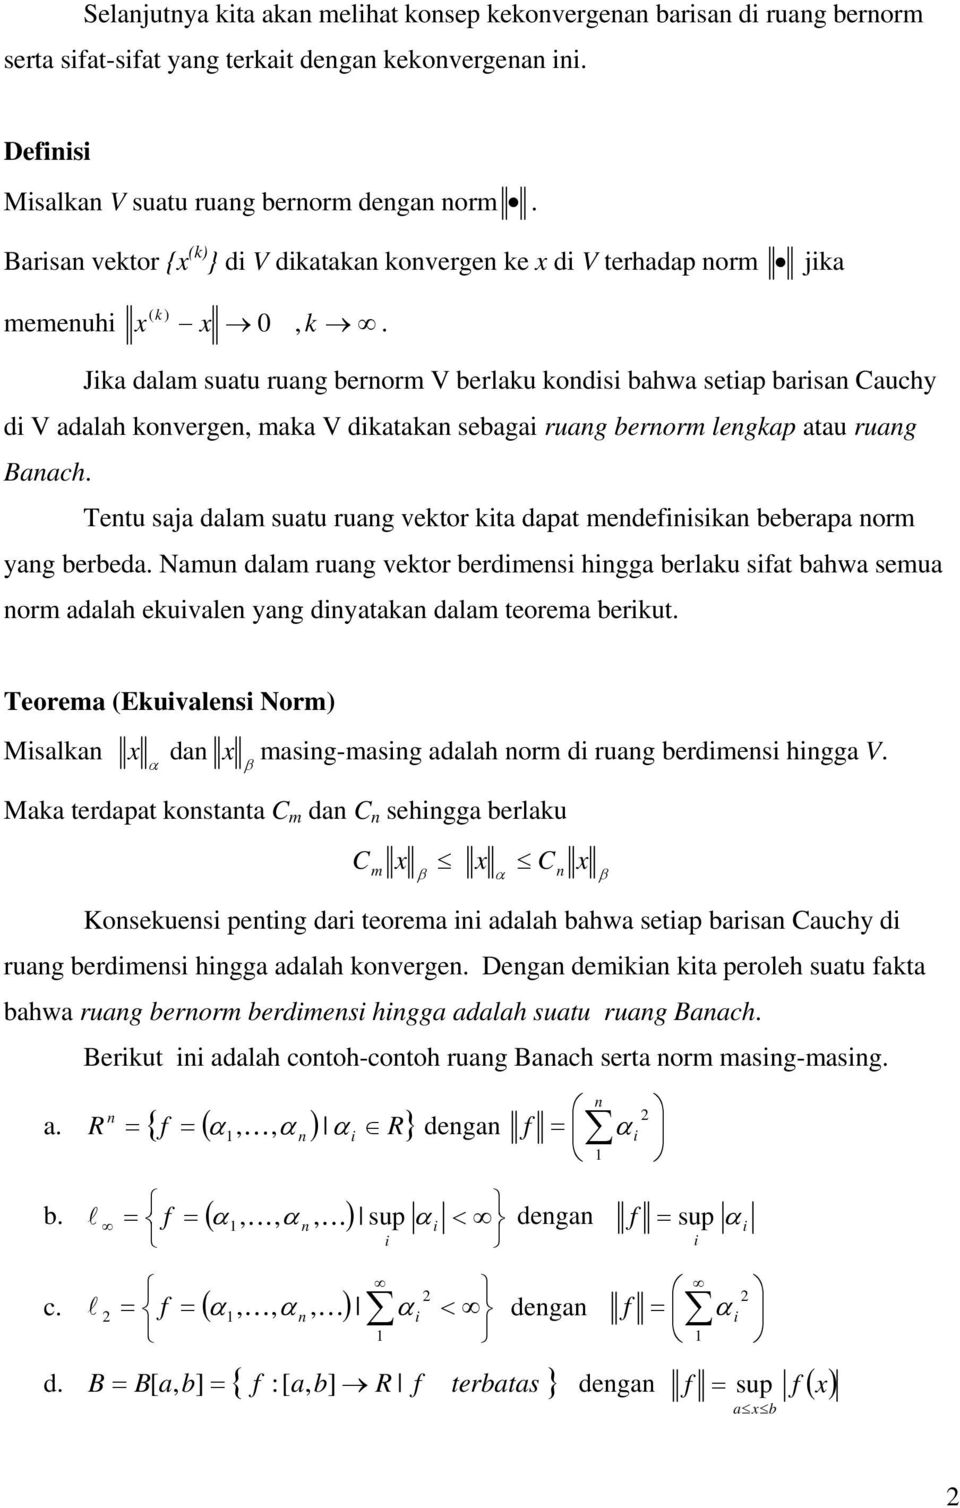 Jka dalam suatu ruag berorm V berlaku kods bahwa seta barsa Cauchy d V adalah koverge, maka V dkataka sebaga ruag berorm legka atau ruag Baach.